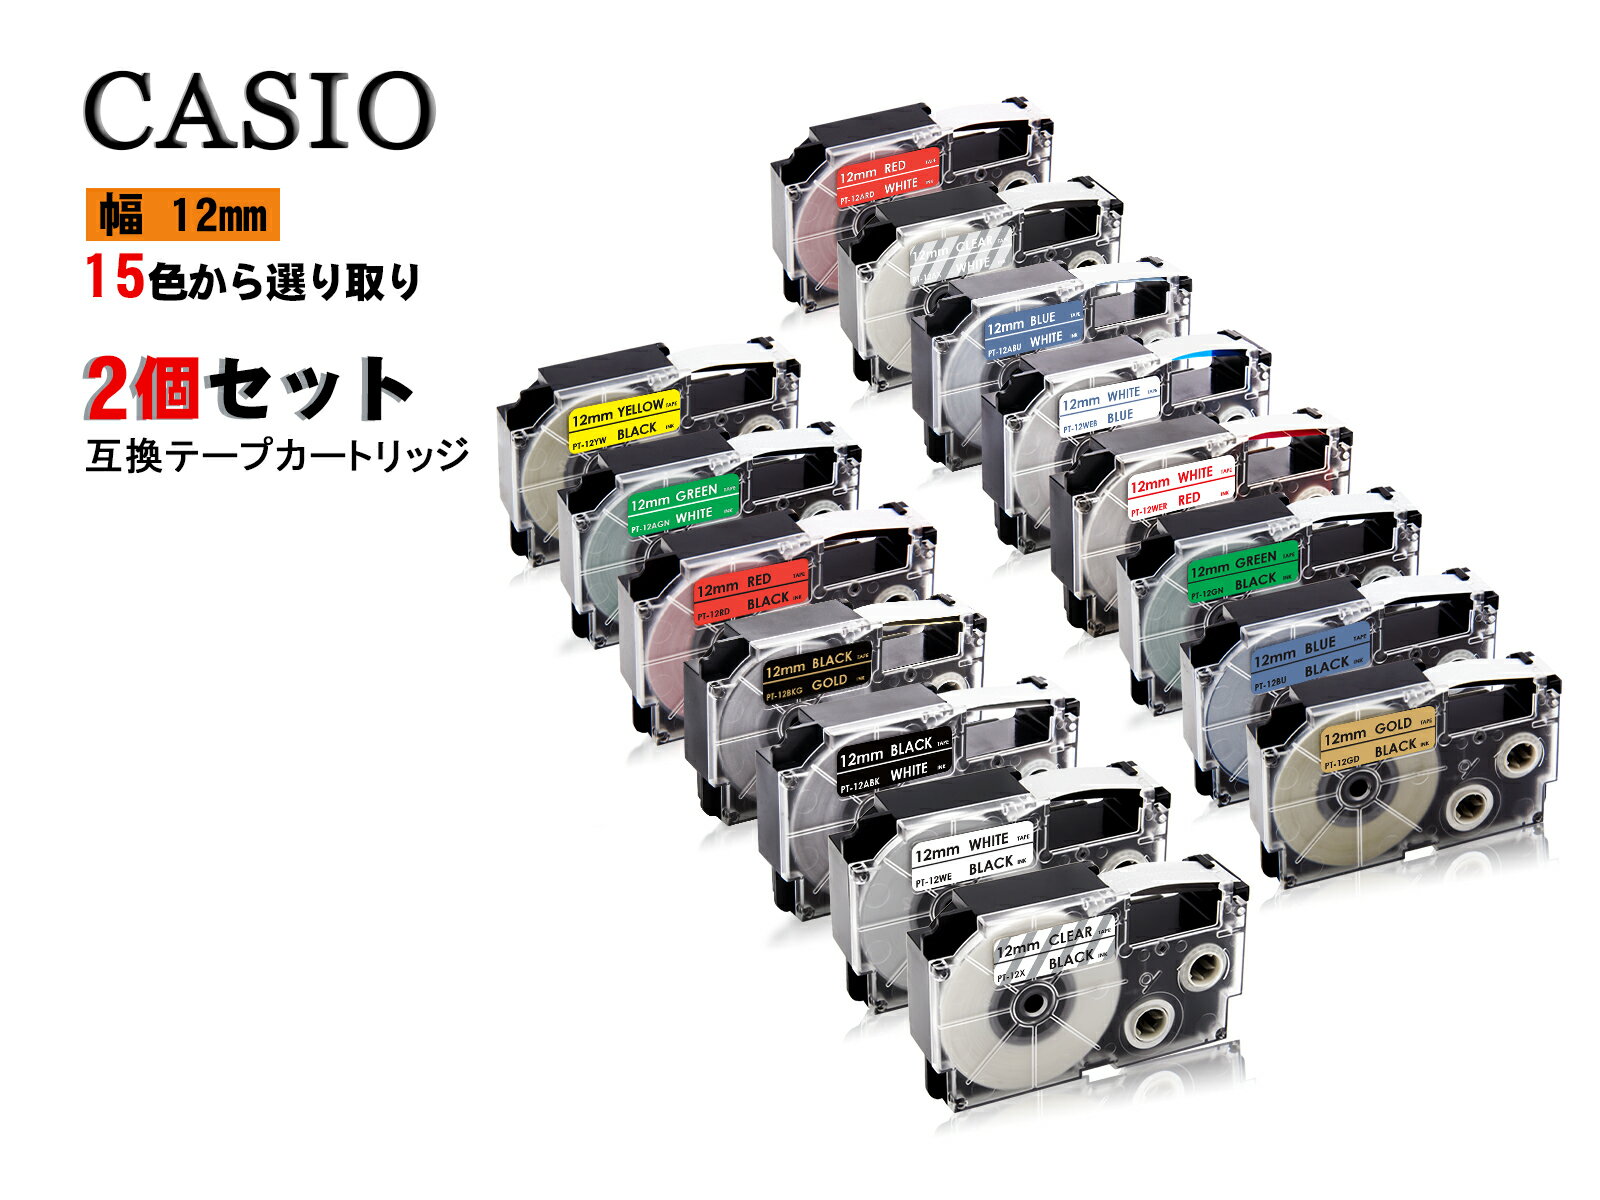 Casio casio カシオ ネームランド 互換テープカートリッジ テプラテープ 互換 幅 12mm 長さ 8m 全 15色..